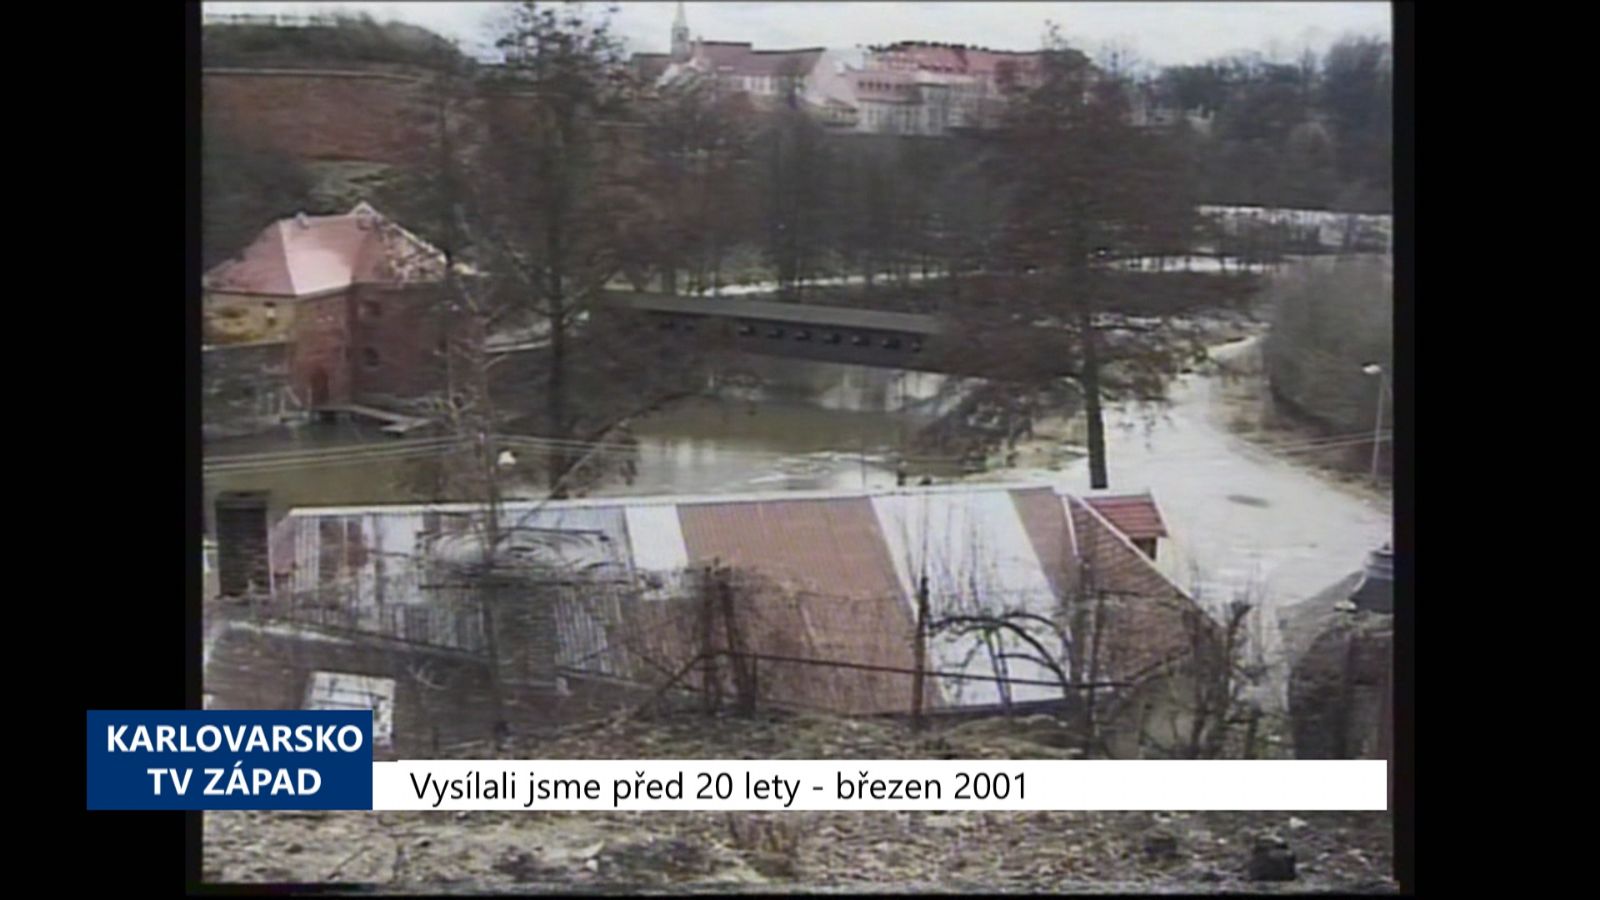 2001 – Cheb: Příprava studií pro revitalizaci Poohří a Parku Egrensis (TV Západ)